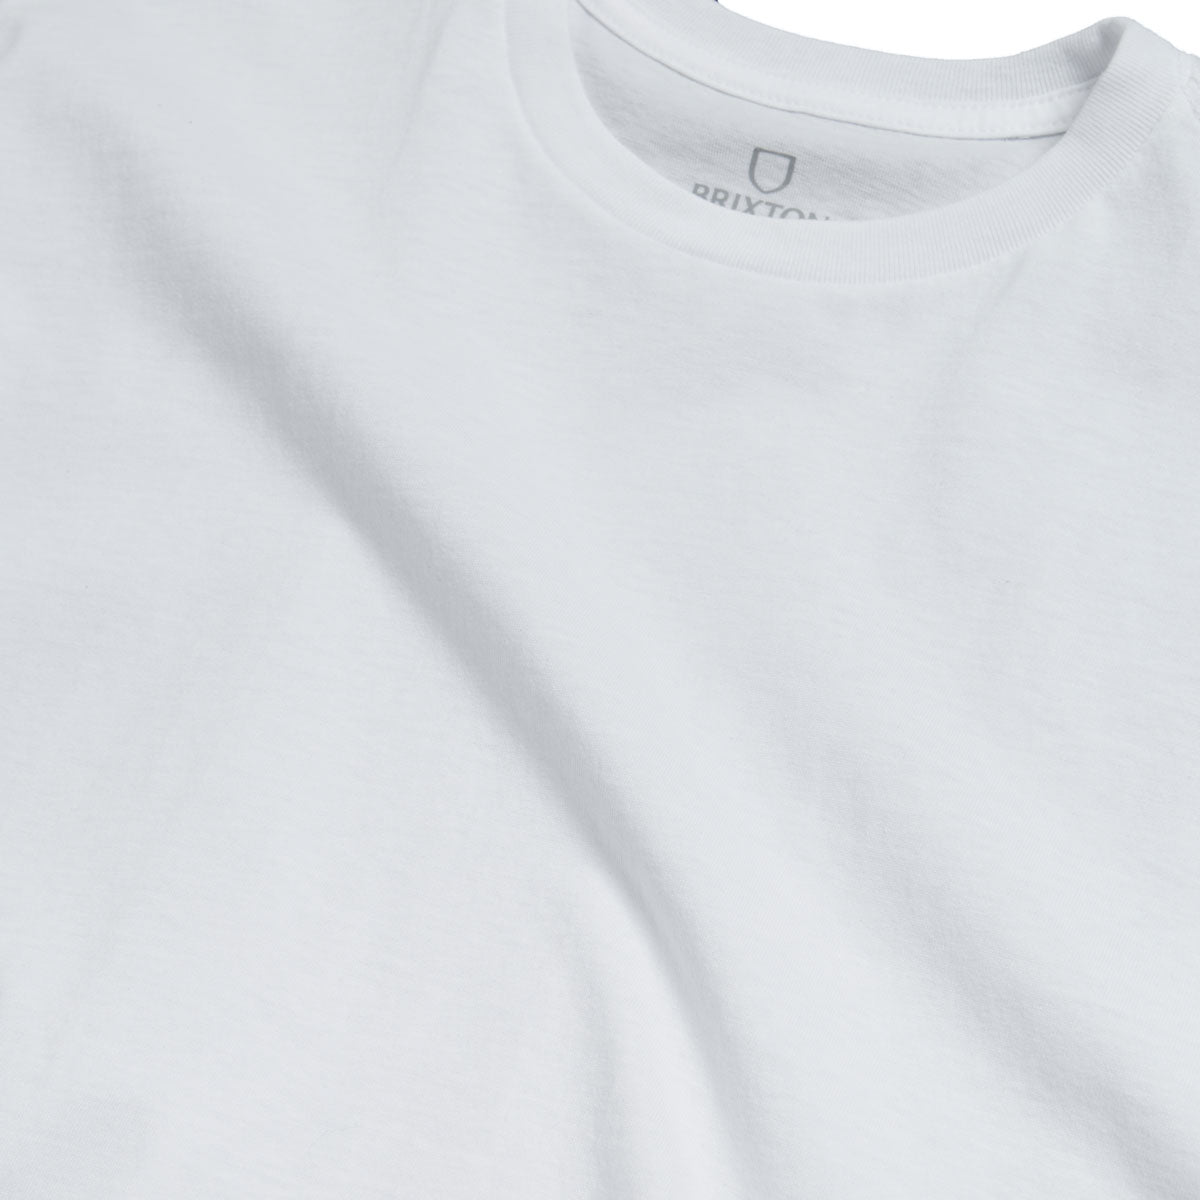 Brixton Basic T-Shirt - White image 2